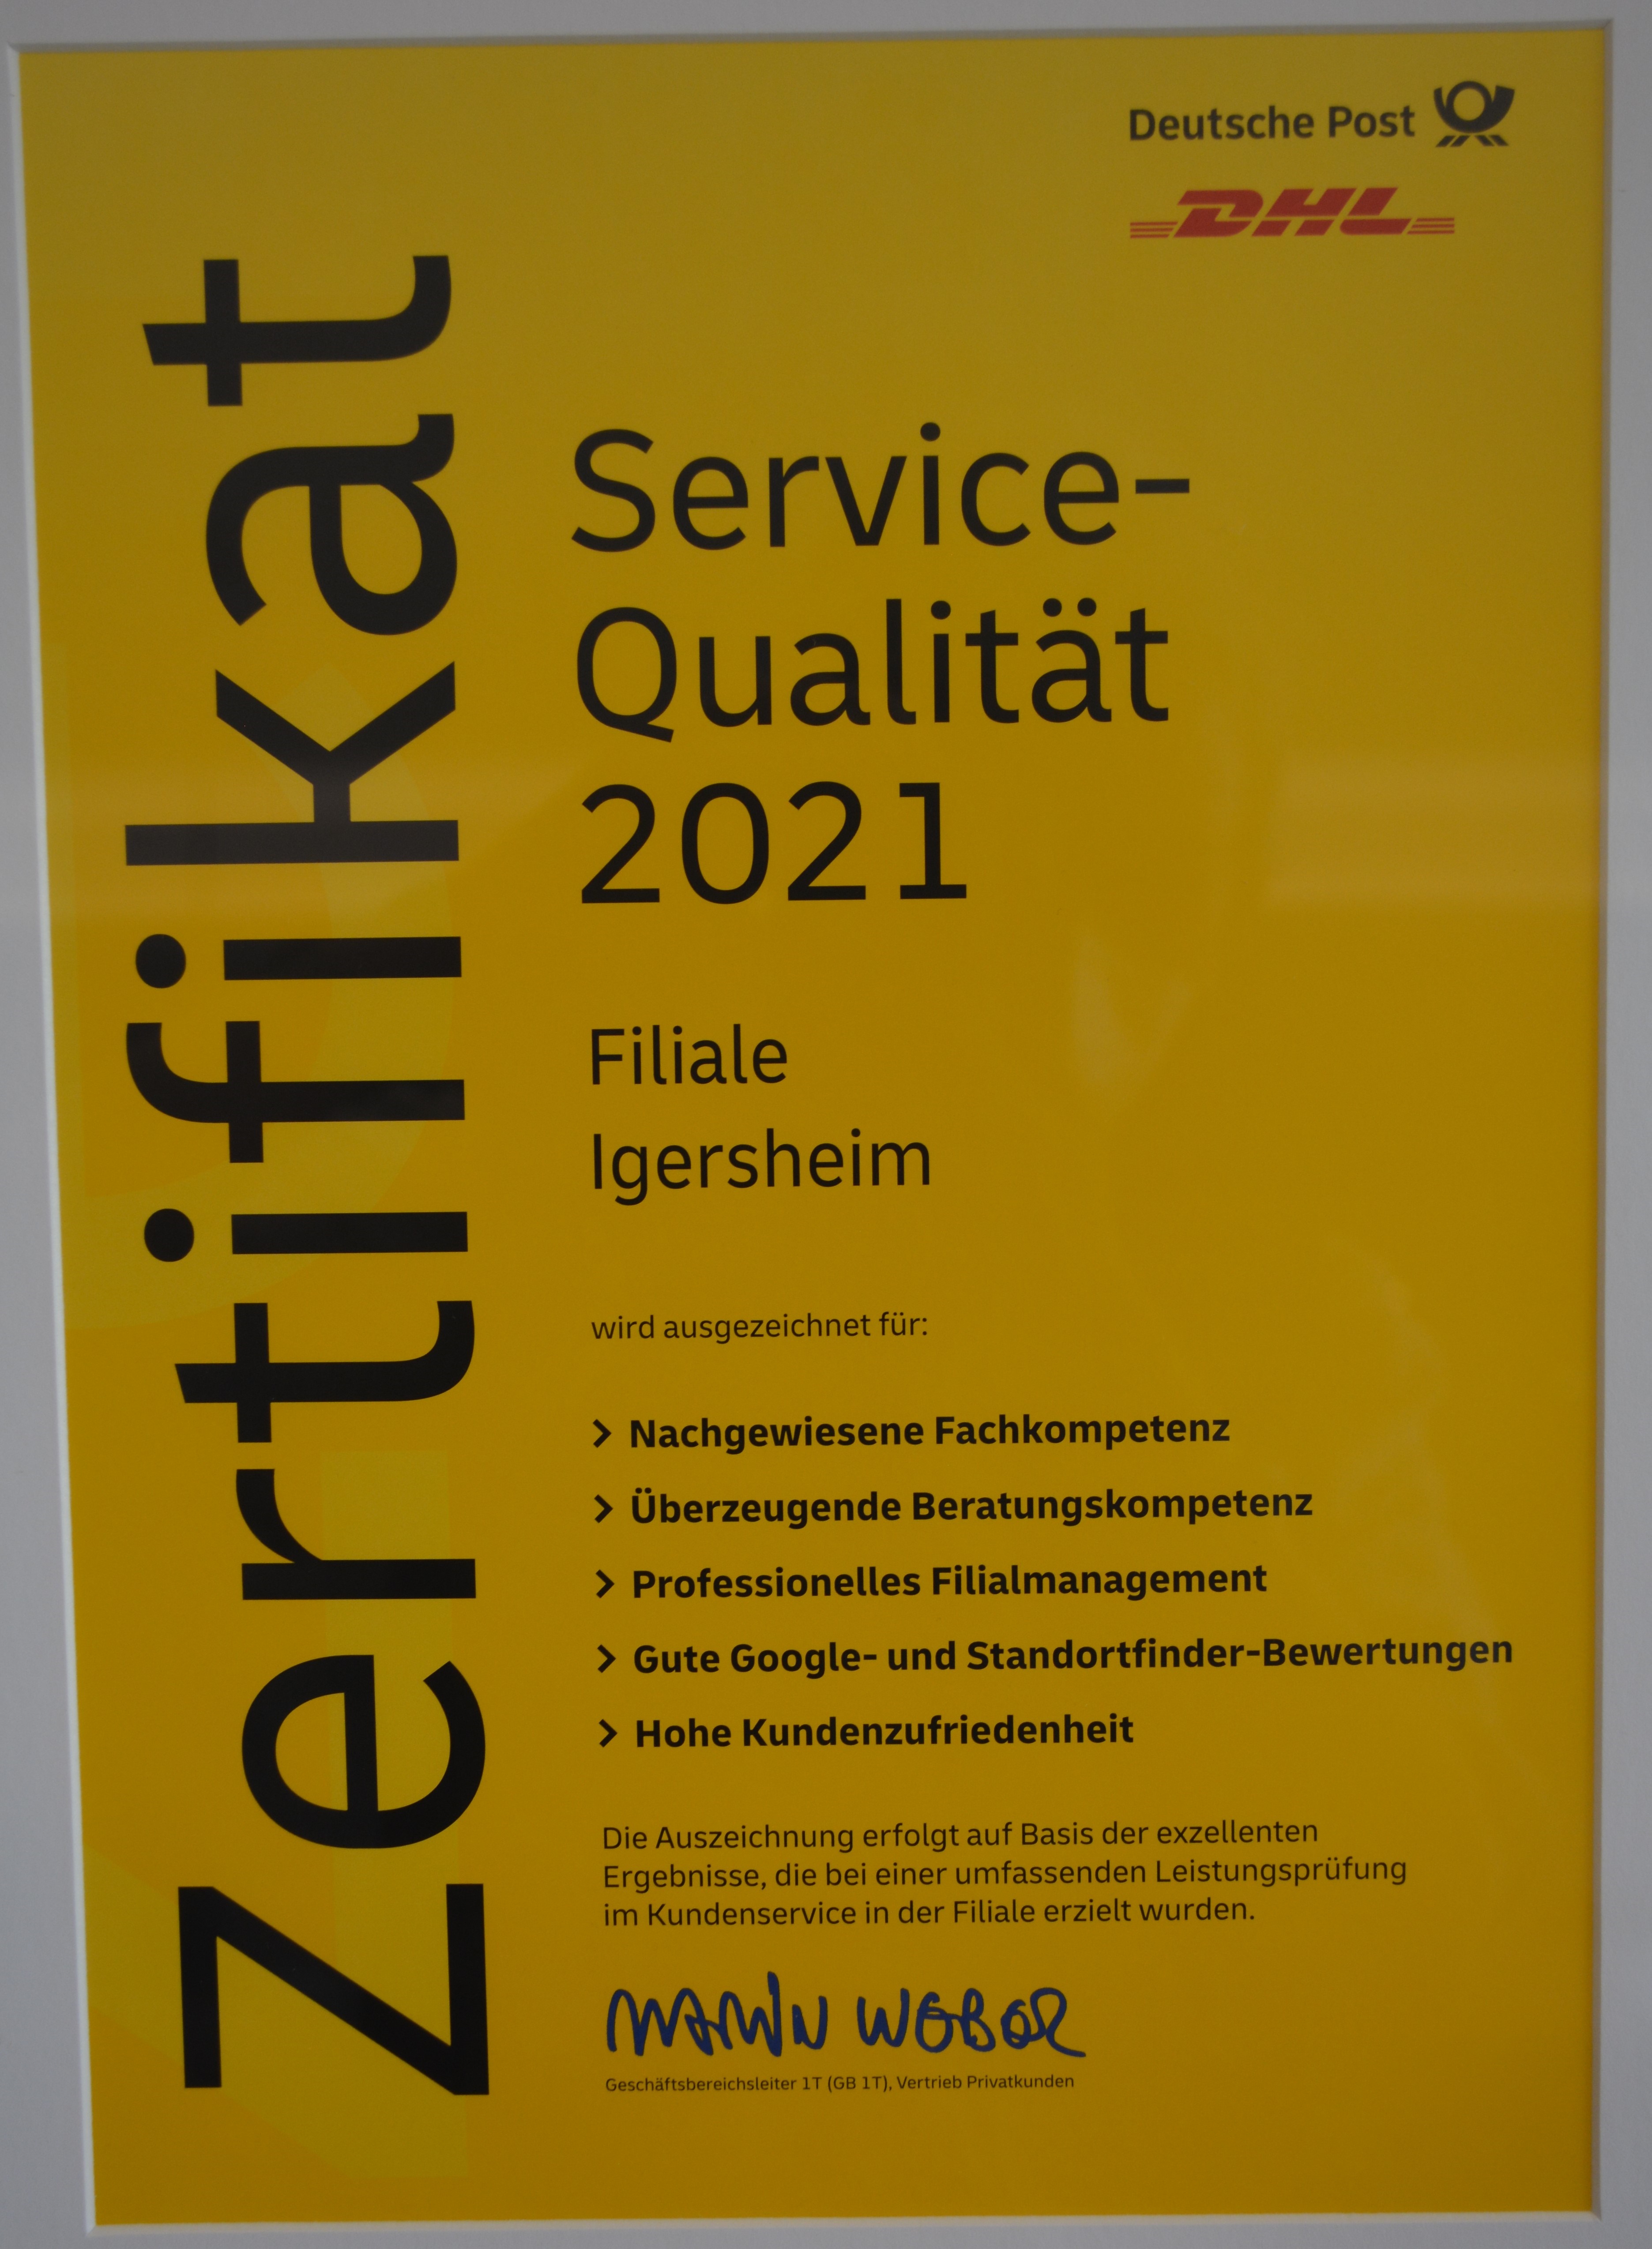 Zertifikat der Deutsche Post / DHL für für besondere Service-Qualität 2021